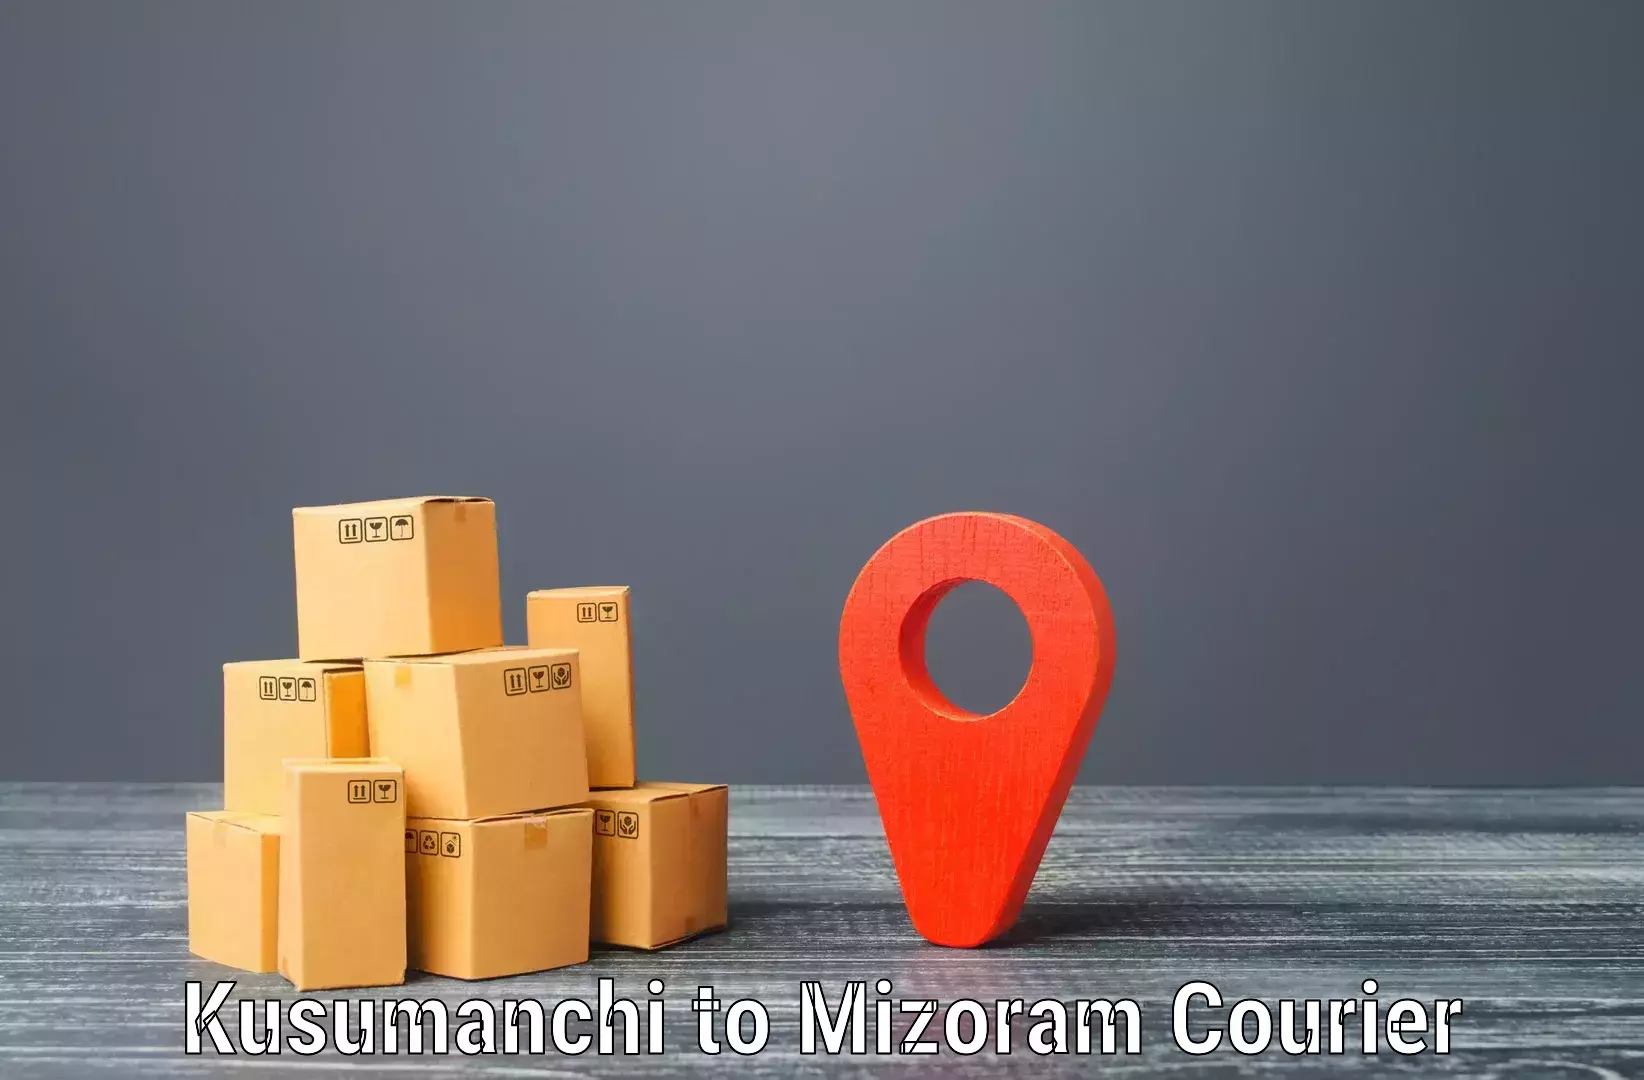 Tech-enabled shipping Kusumanchi to Serchhip